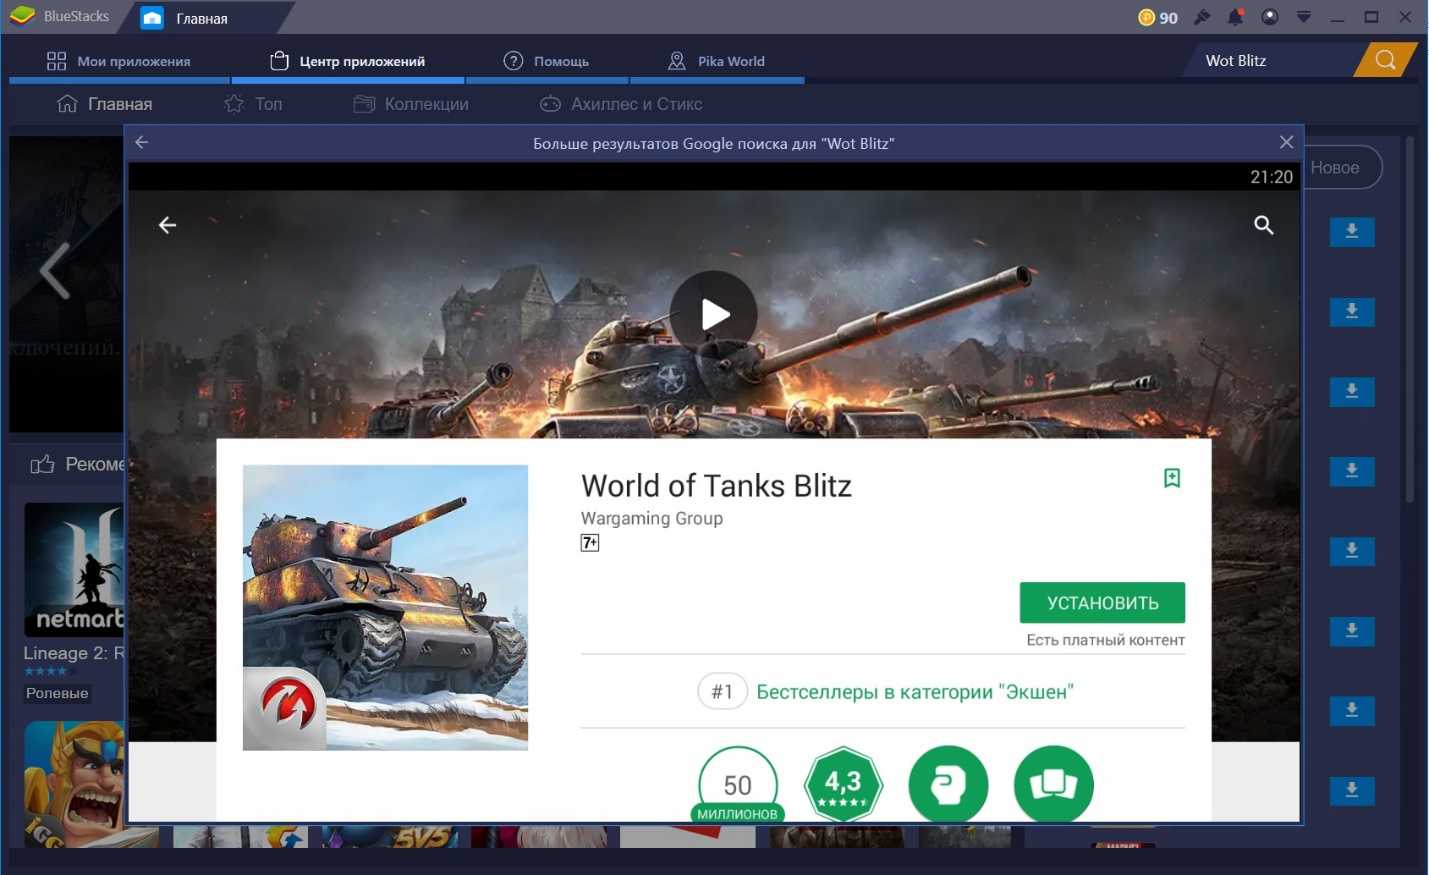 Информация об игре World of Tanks Blitz –  описание, обзоры, даты выхода дополнений DLC к игре, поддерживаемые платформы и официальный сайт Узнайте полную информацию об игре World of Tanks Blitz на нашем сайте